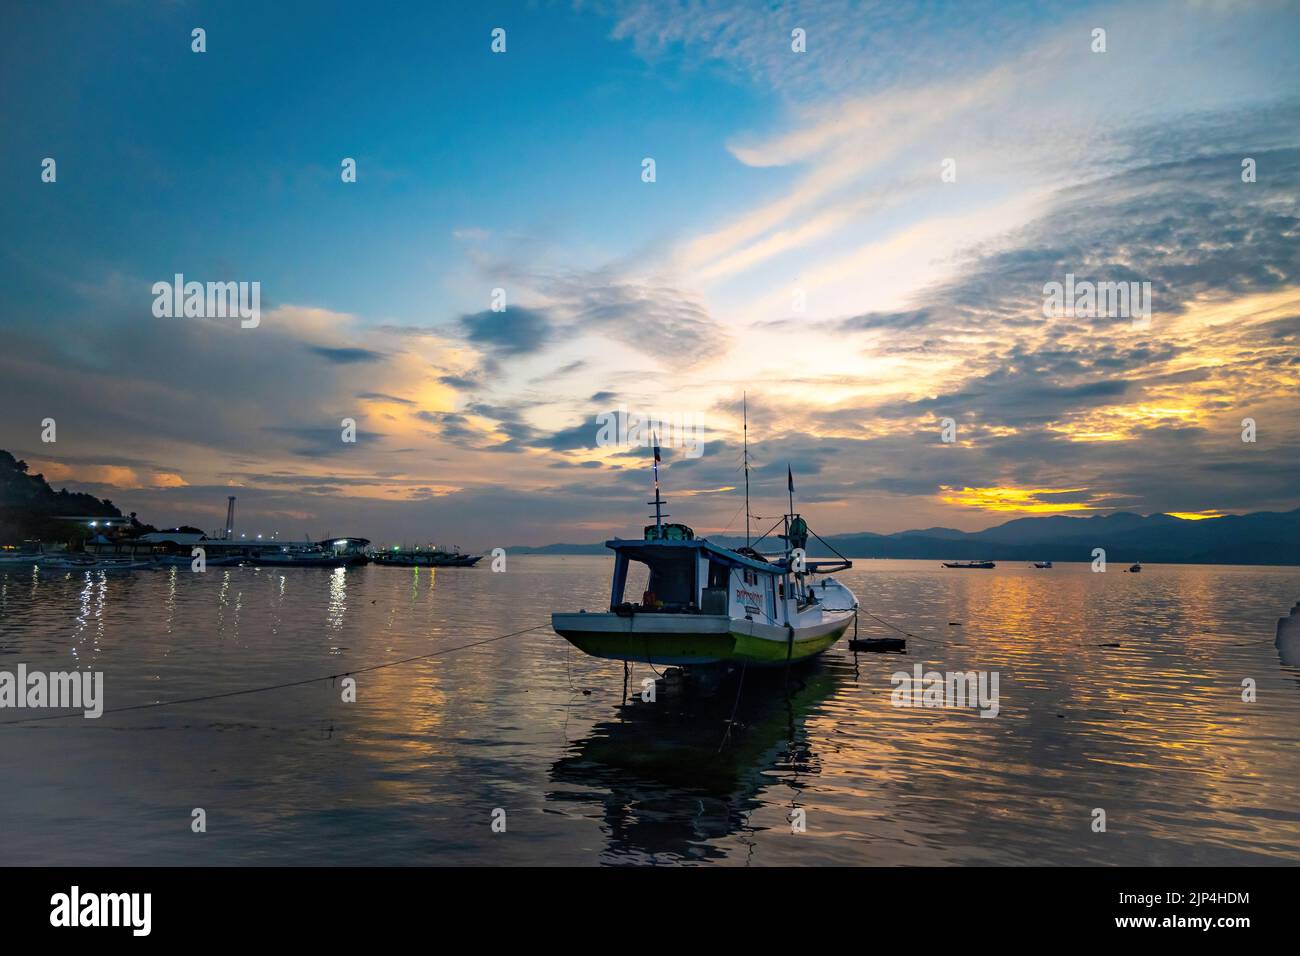 Sulawesi, Indonesia. Stock Photo